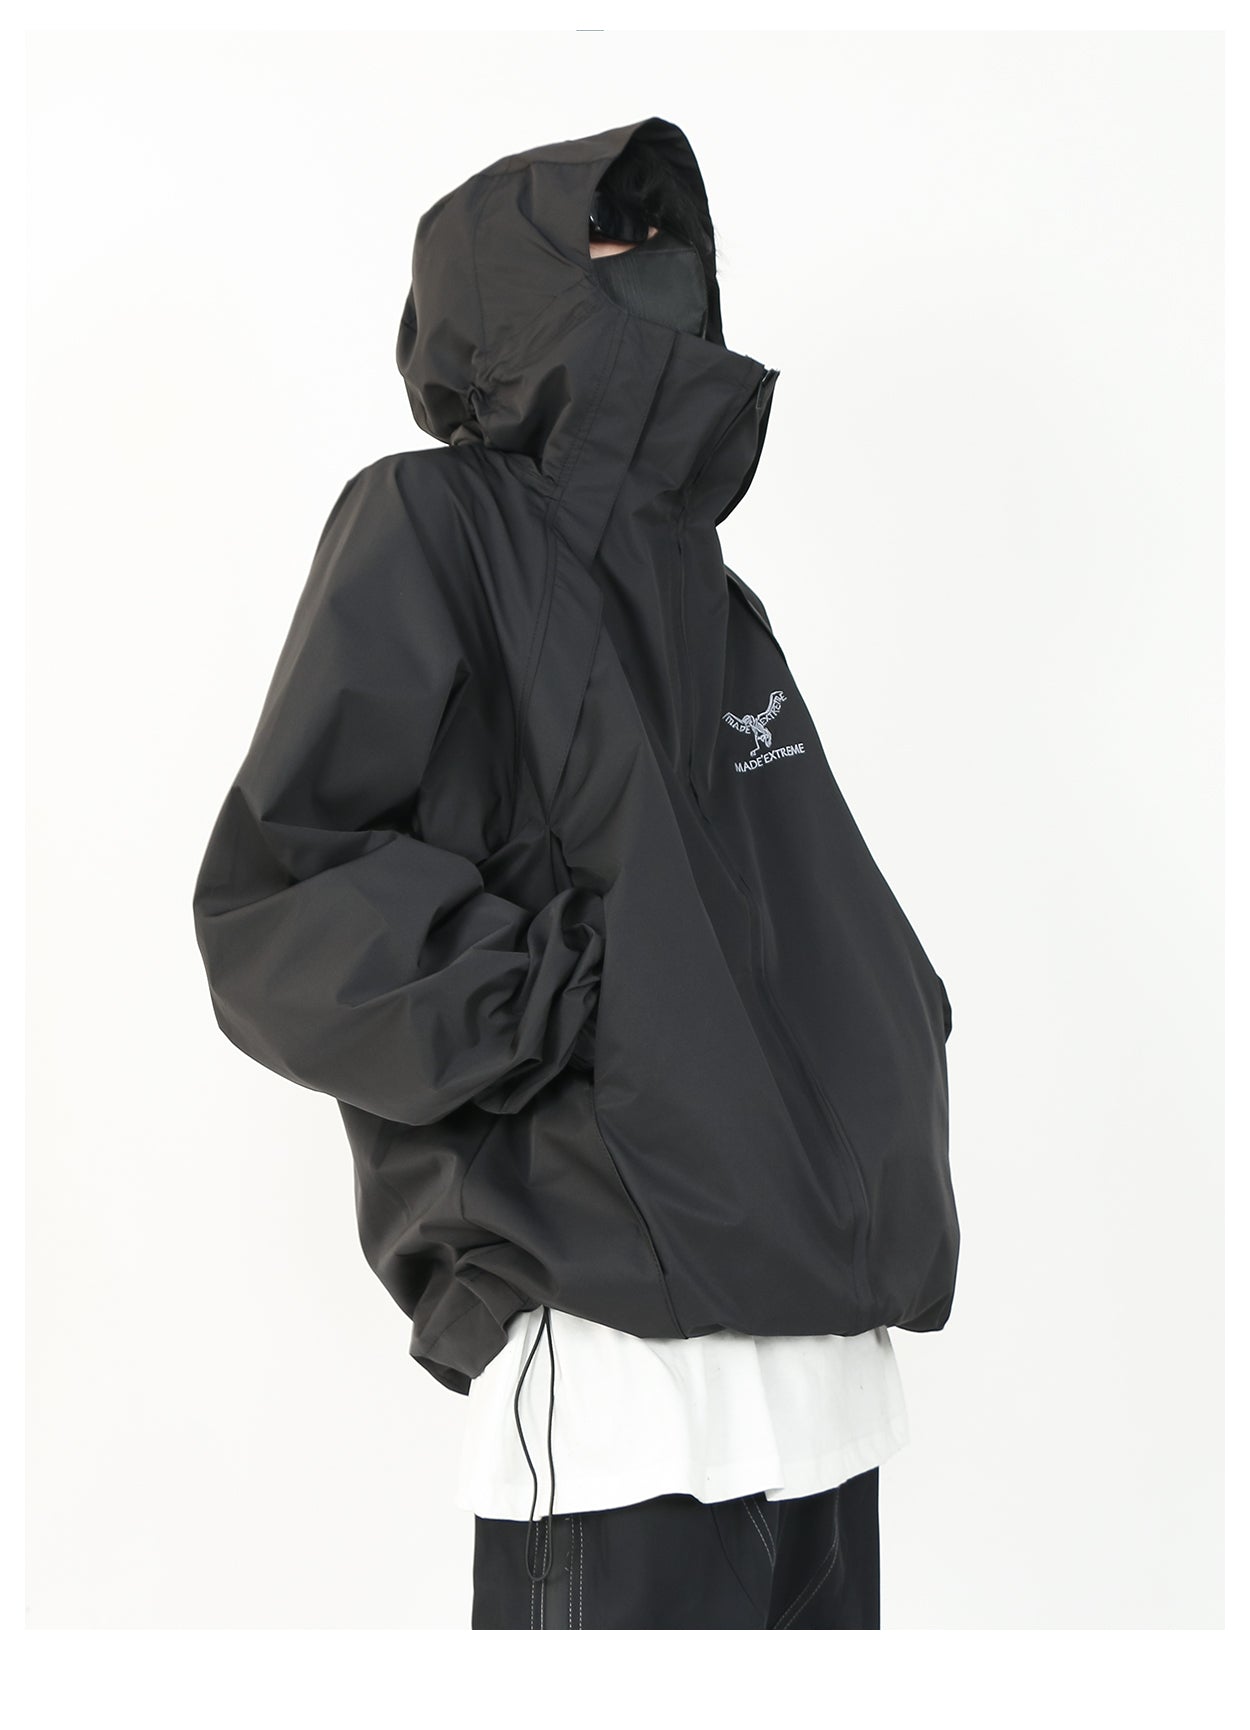 Made Extreme Hooded Windbreaker Jacket